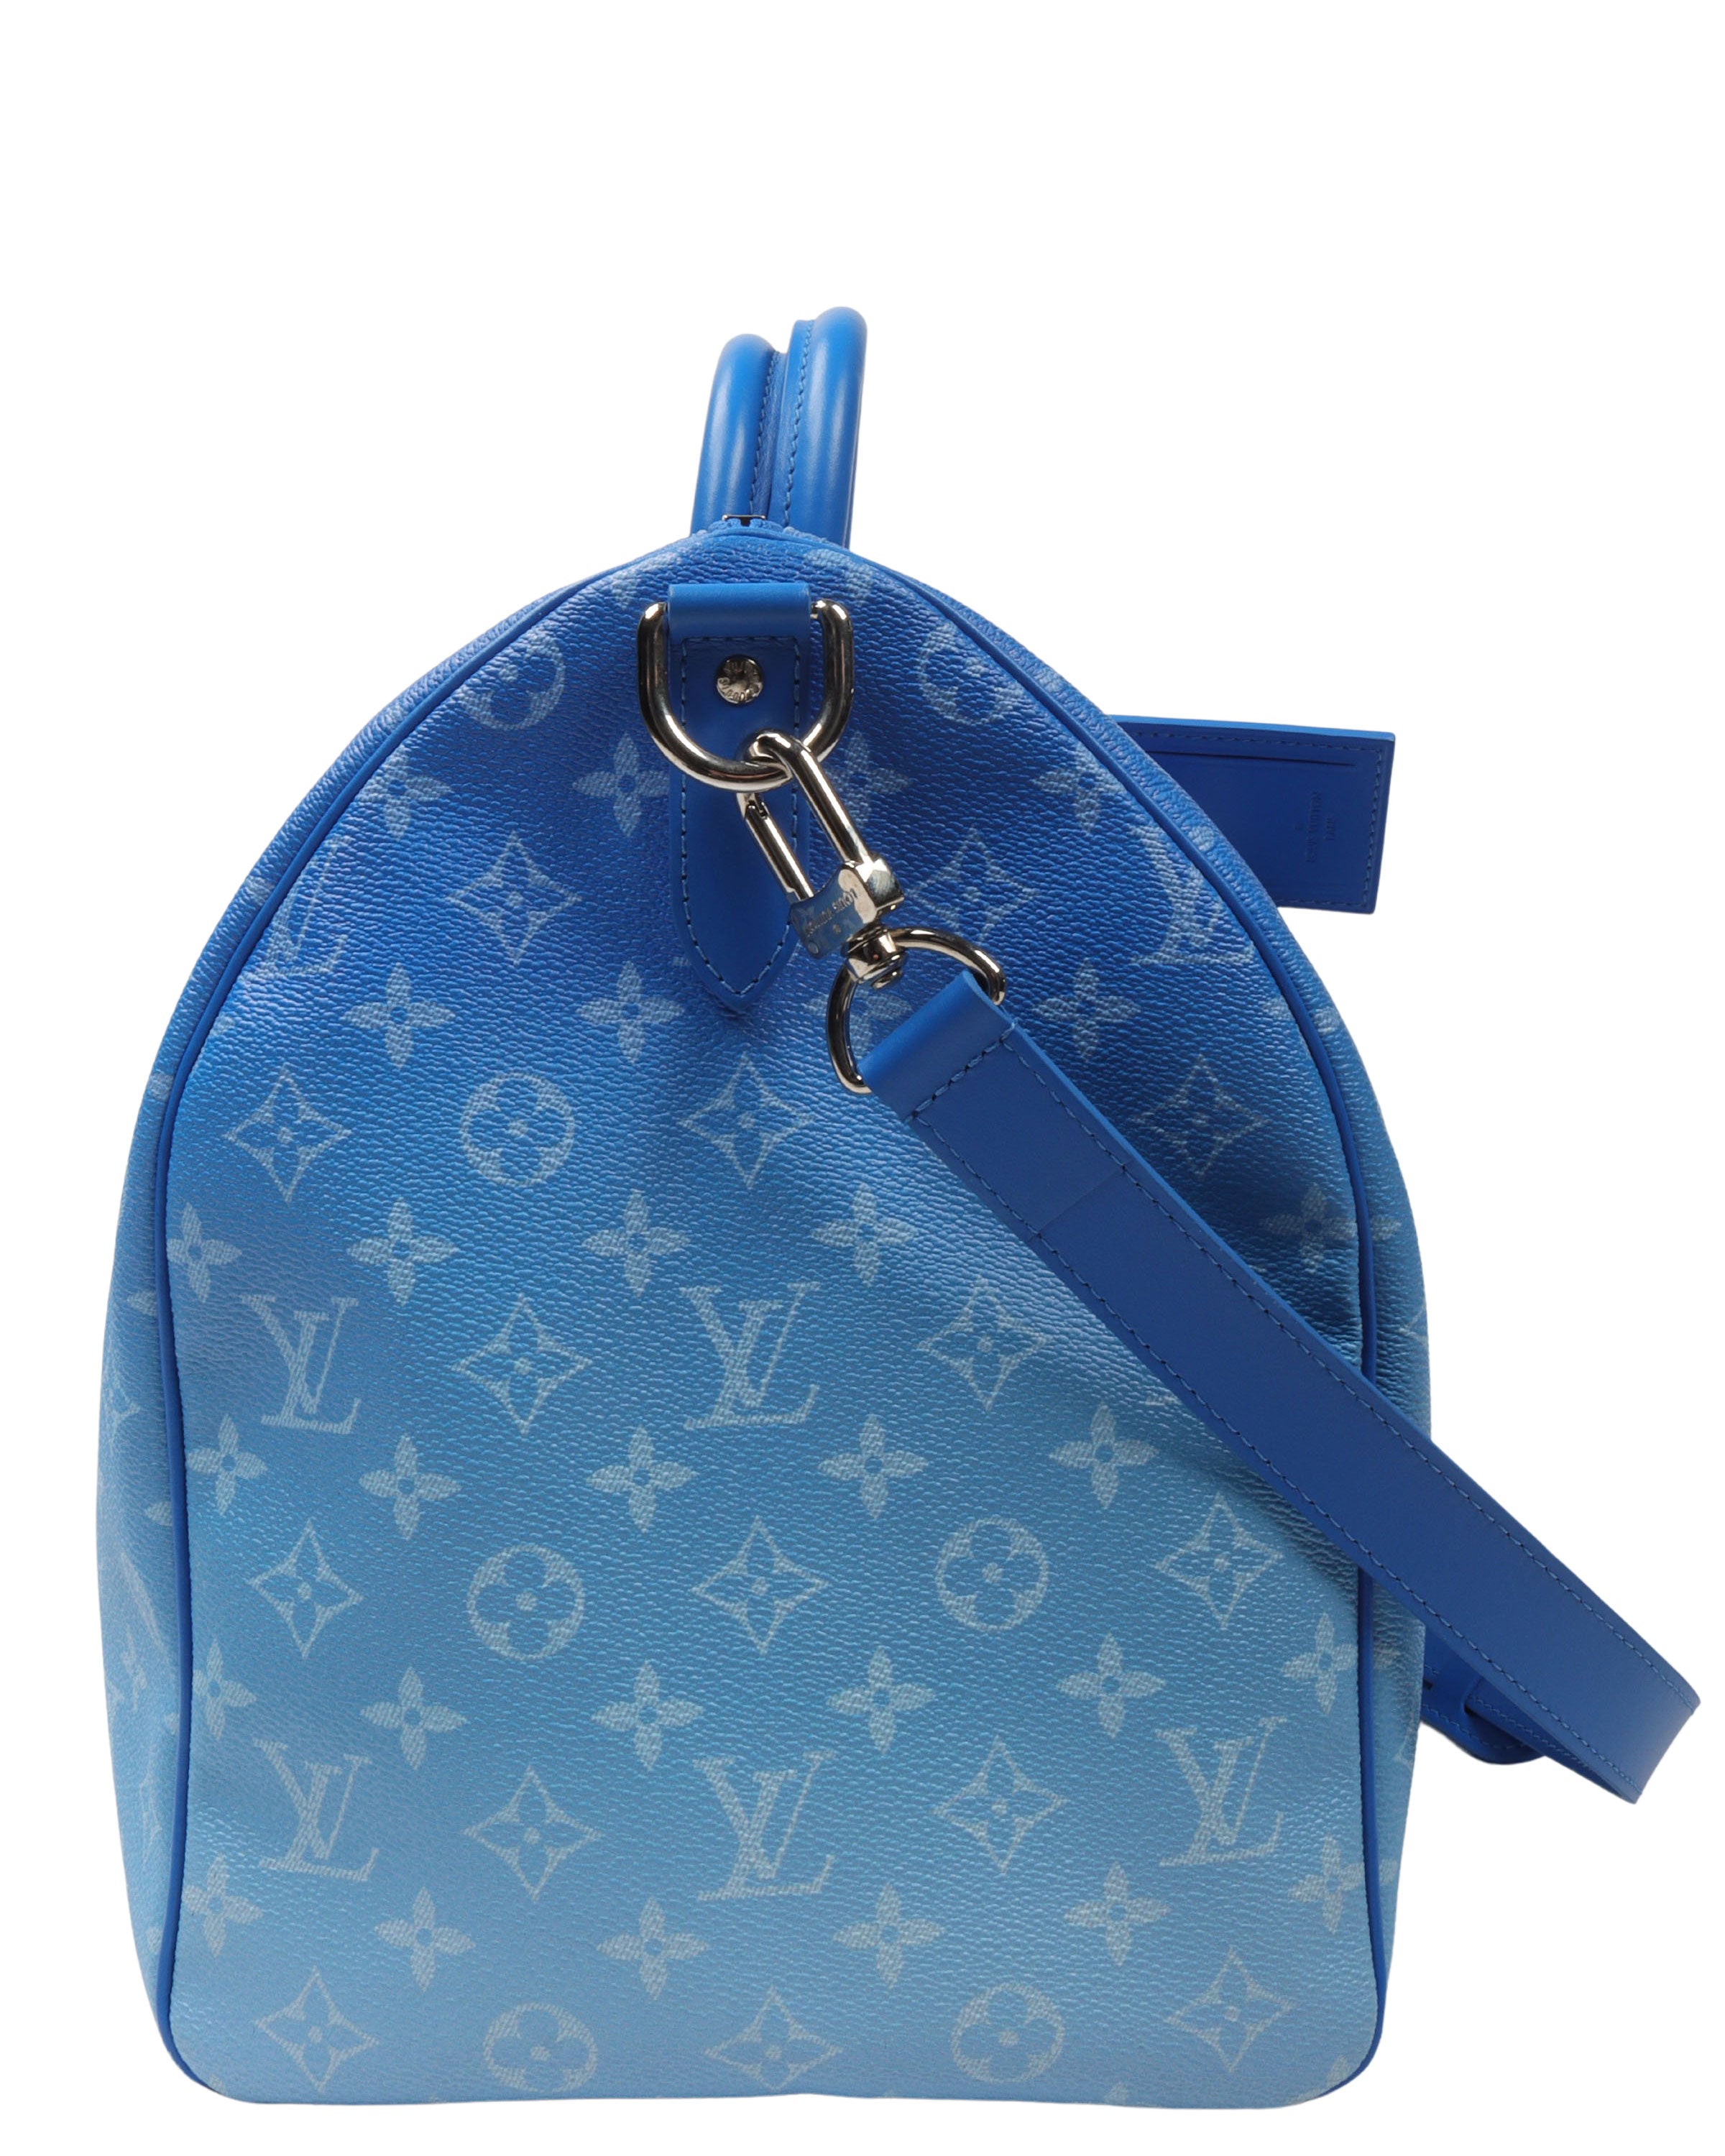 Twenty Ninth Store - Louis Vuitton Cloud Duffle Bag ☁️ Taking